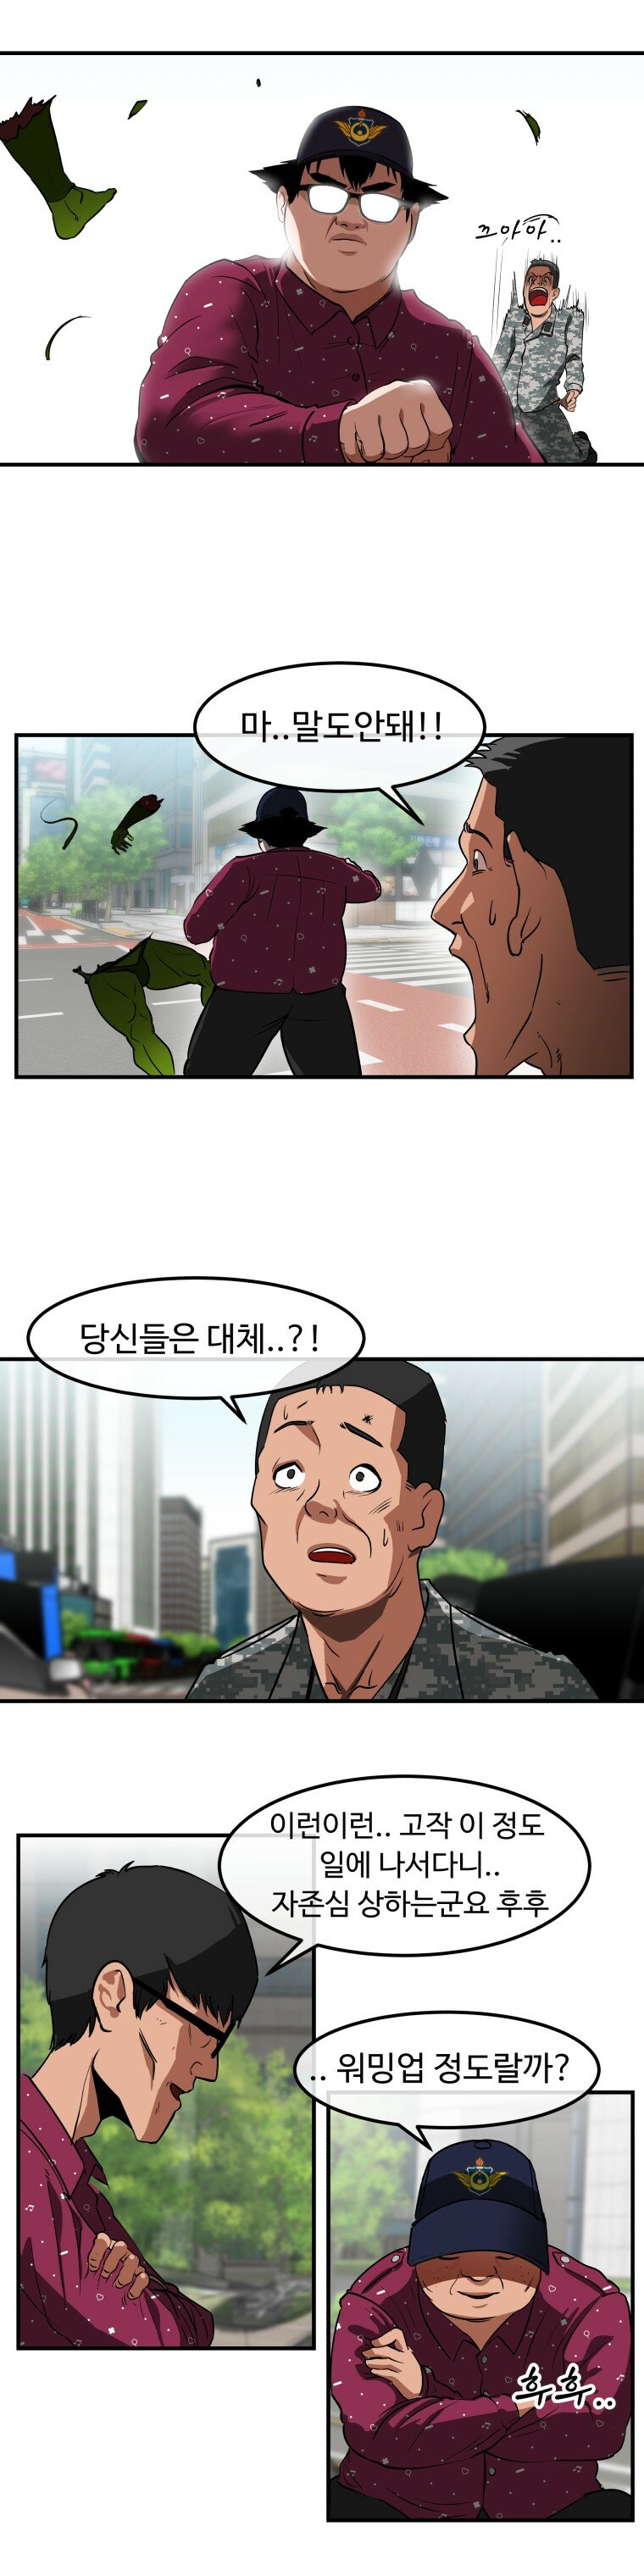 만화 공익 아동센터 사회복무요원